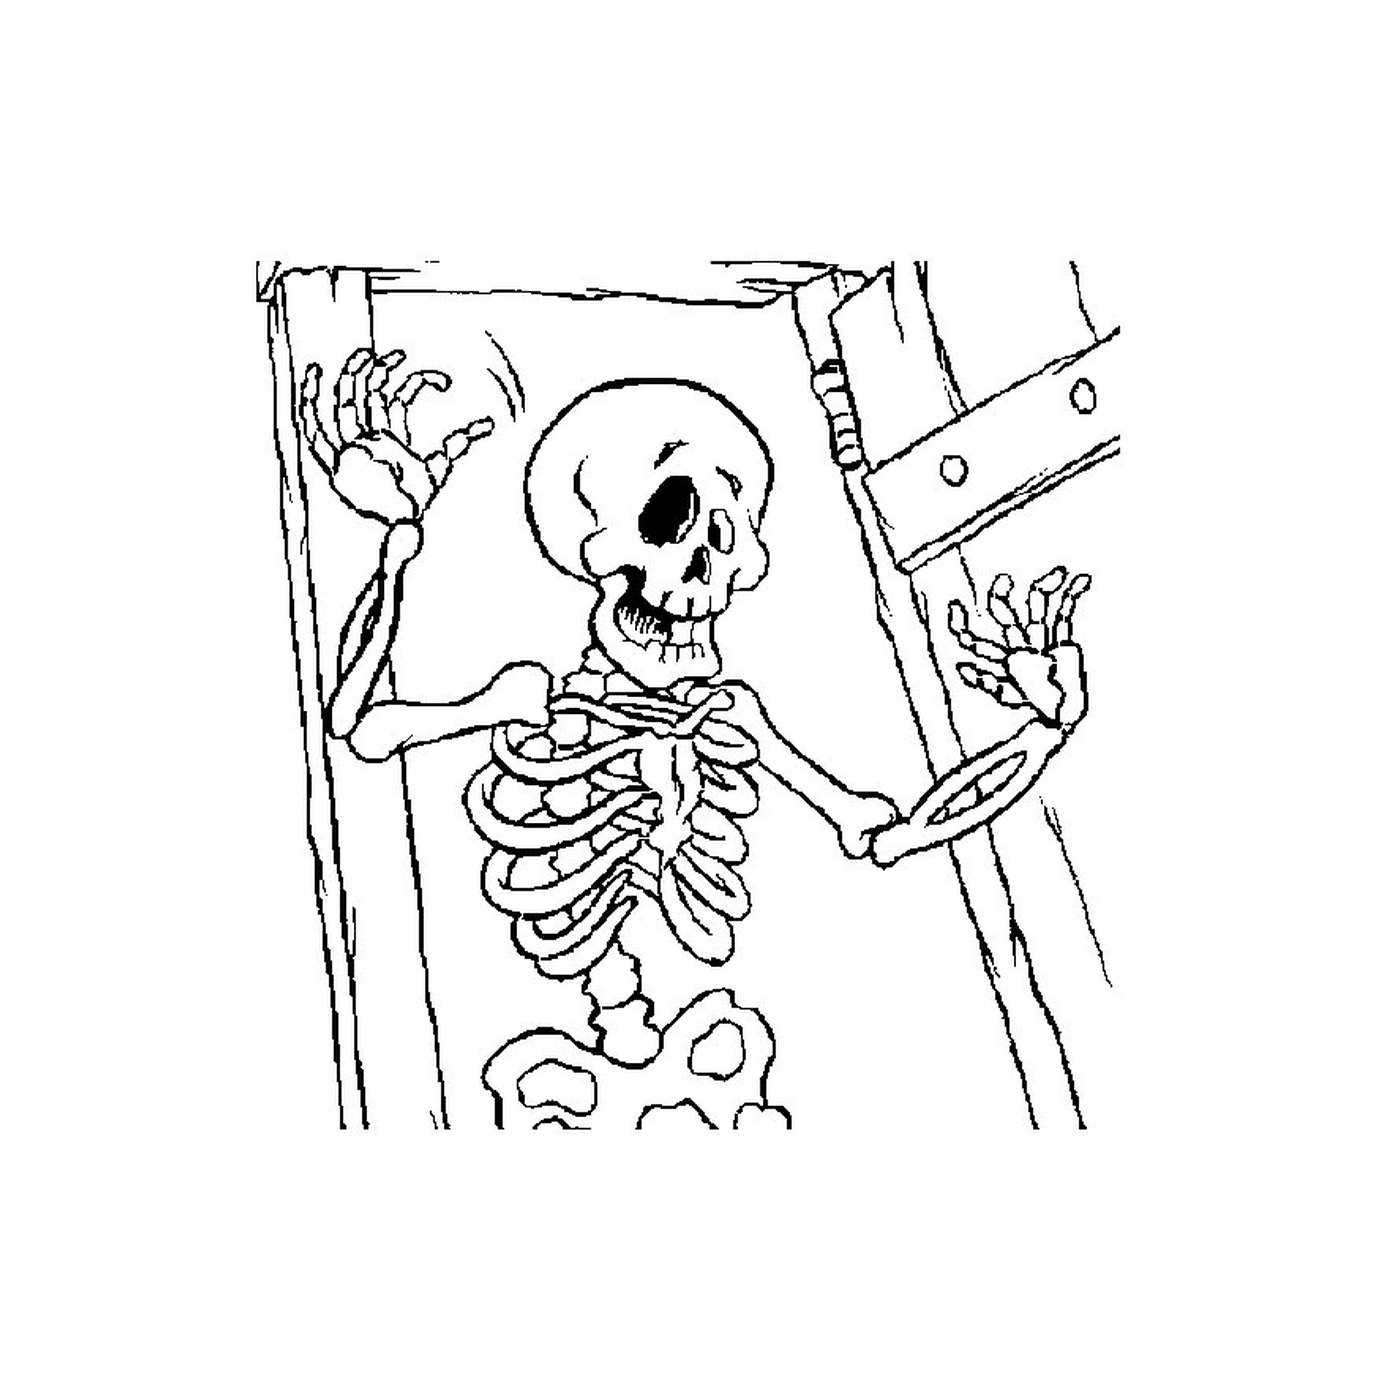  Skelett in einem dunklen Raum 